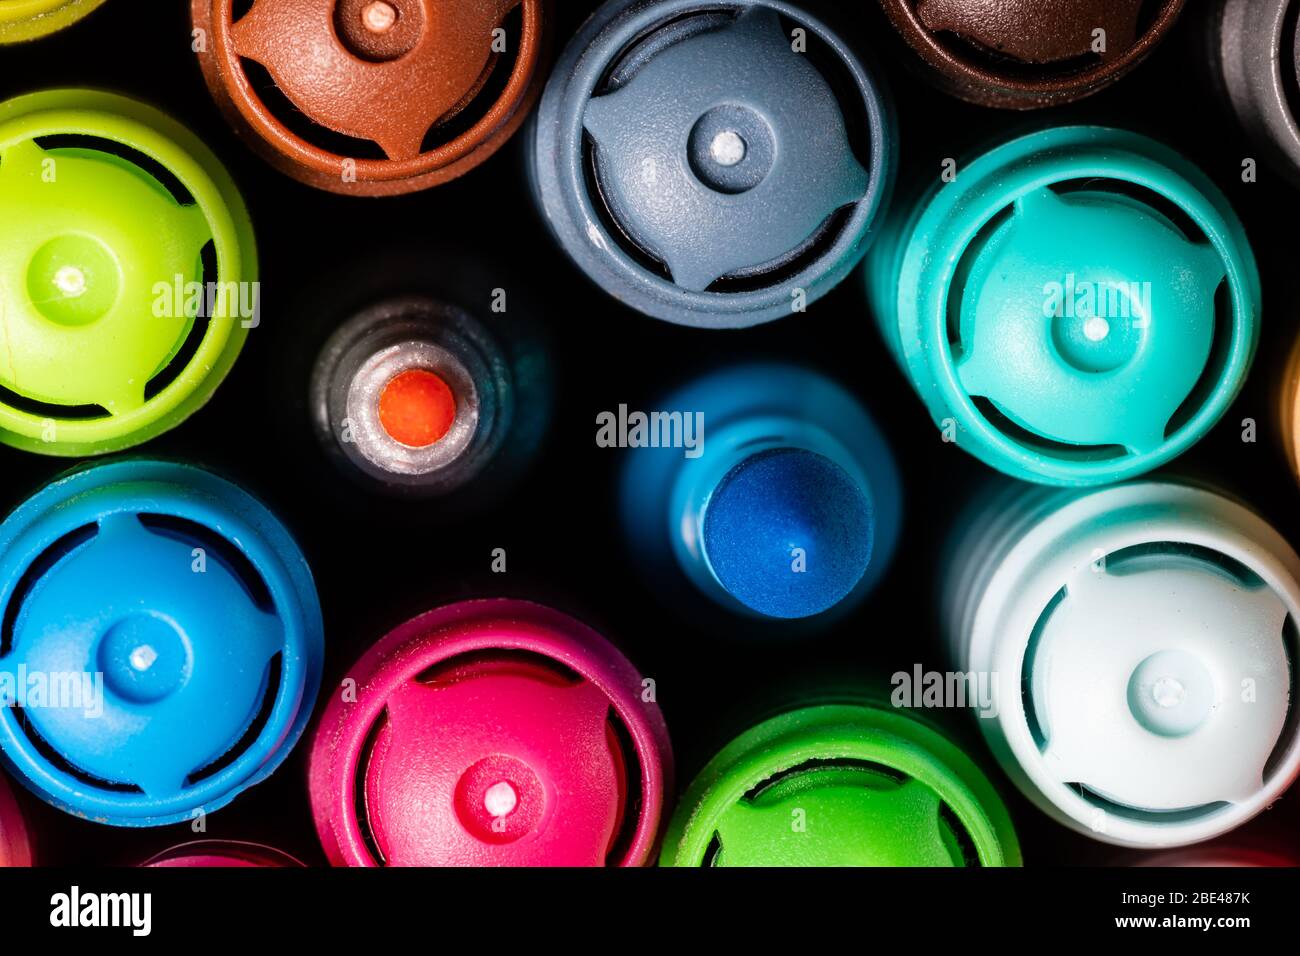 Immagine macro di un set di marcatori colorati dell'artista in una tazza strettamente raggruppati con i cappucci rivolti verso l'alto con una punta larga turchese e una punta fine rosa m Foto Stock